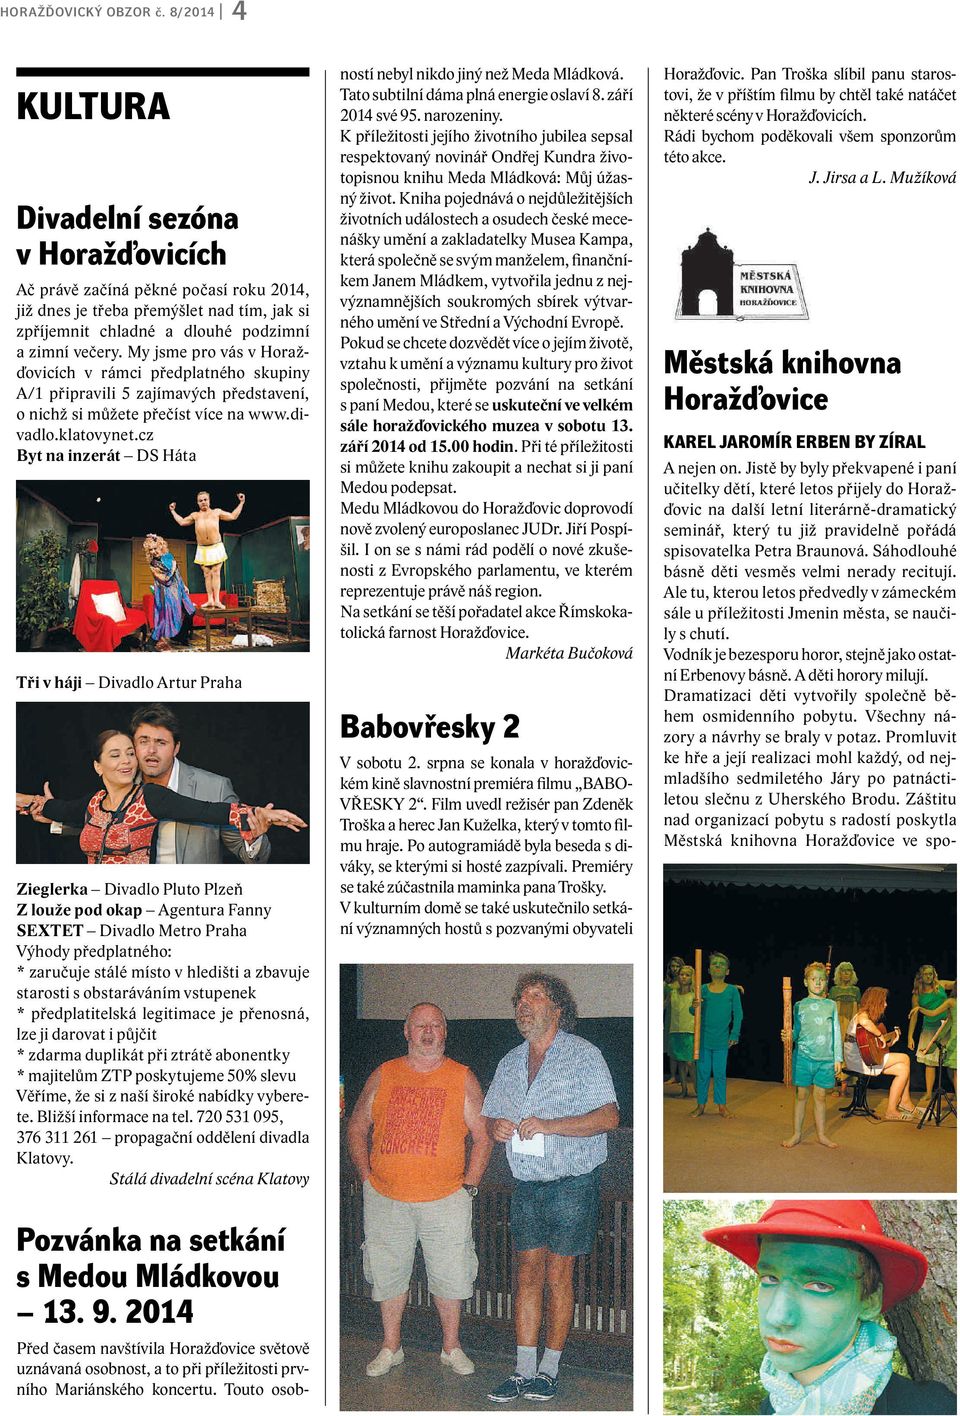 My jsme pro vás v Horažďovicích v rámci předplatného skupiny A/1 připravili 5 zajímavých představení, o nichž si můžete přečíst více na www.divadlo.klatovynet.